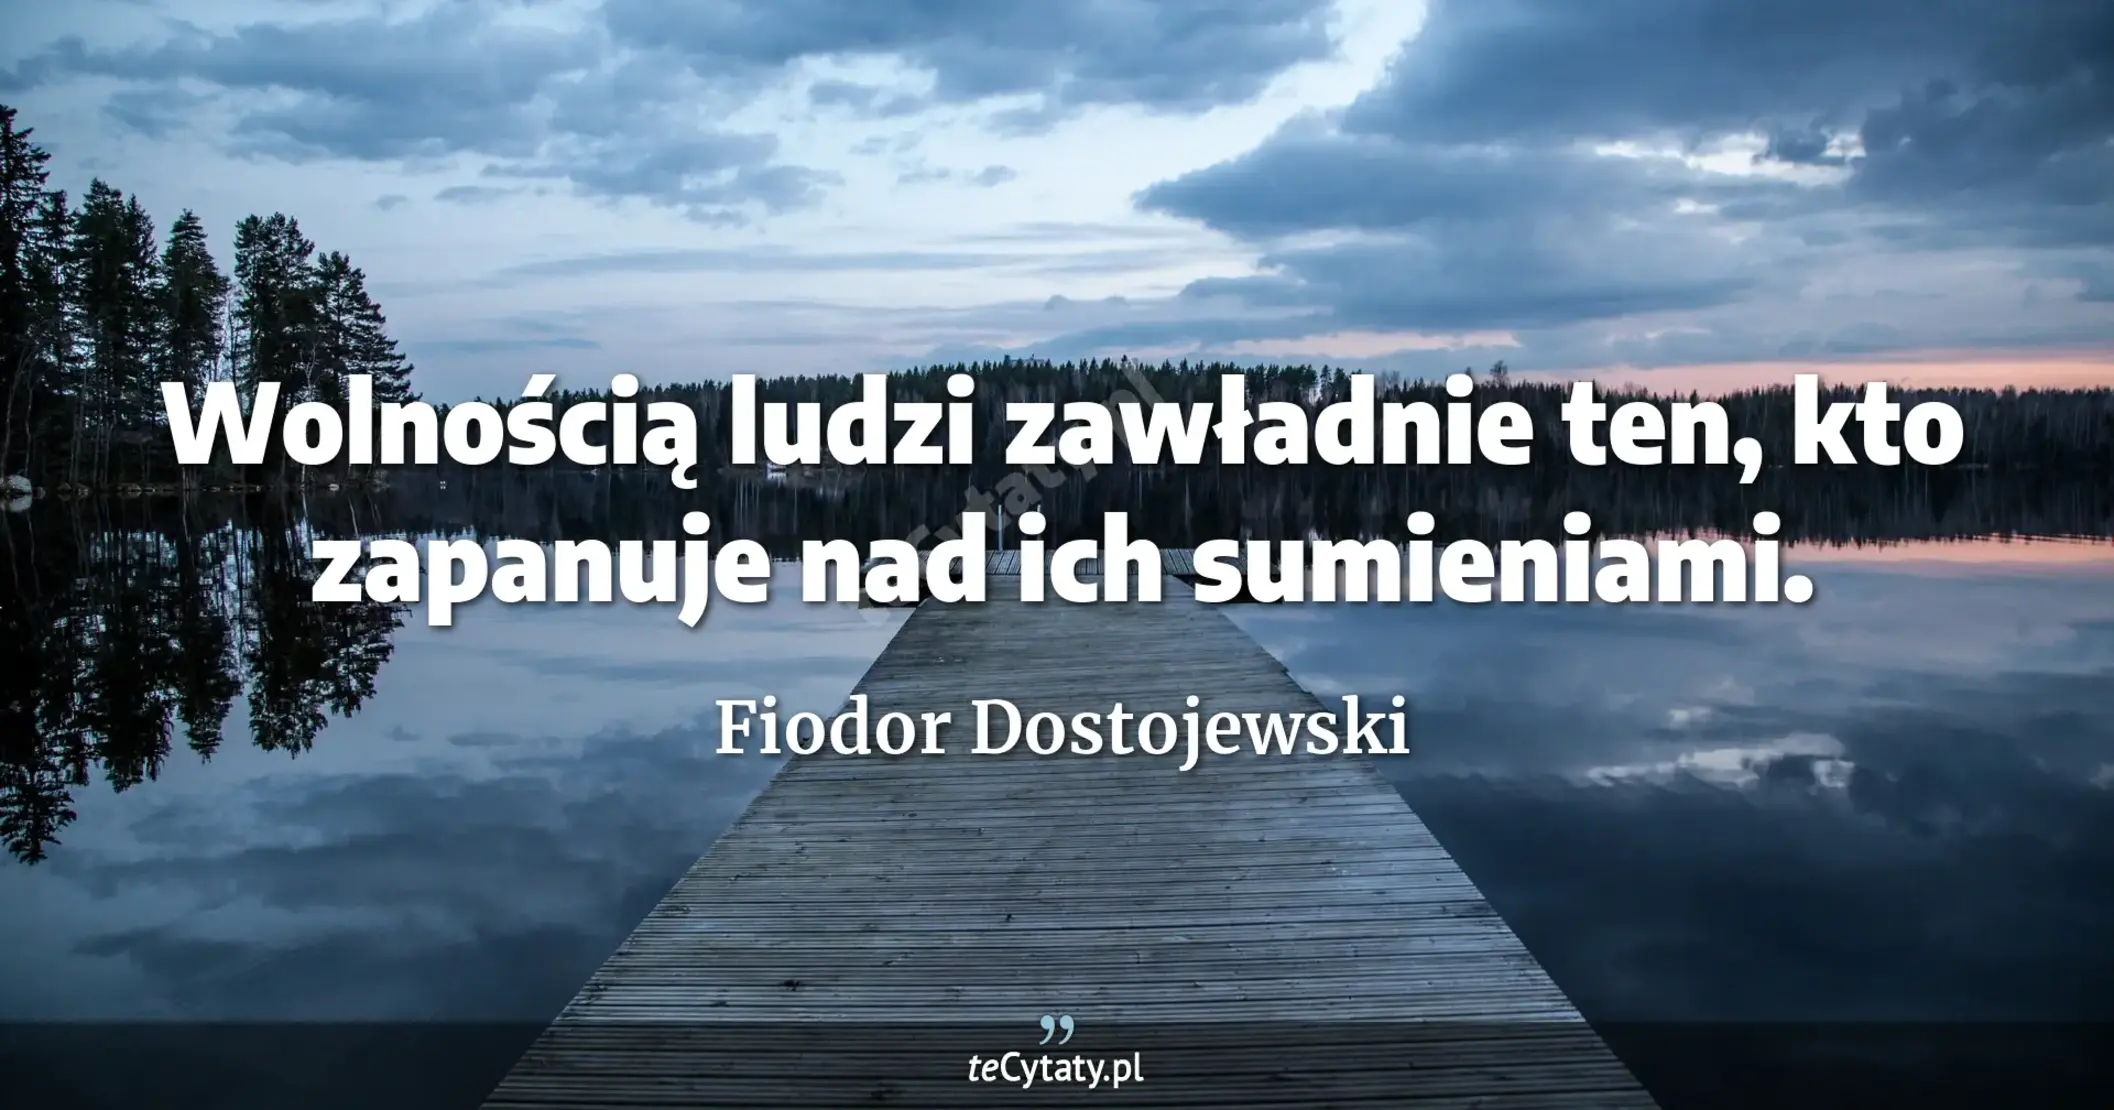 Wolnością ludzi zawładnie ten, kto zapanuje nad ich sumieniami. - Fiodor Dostojewski